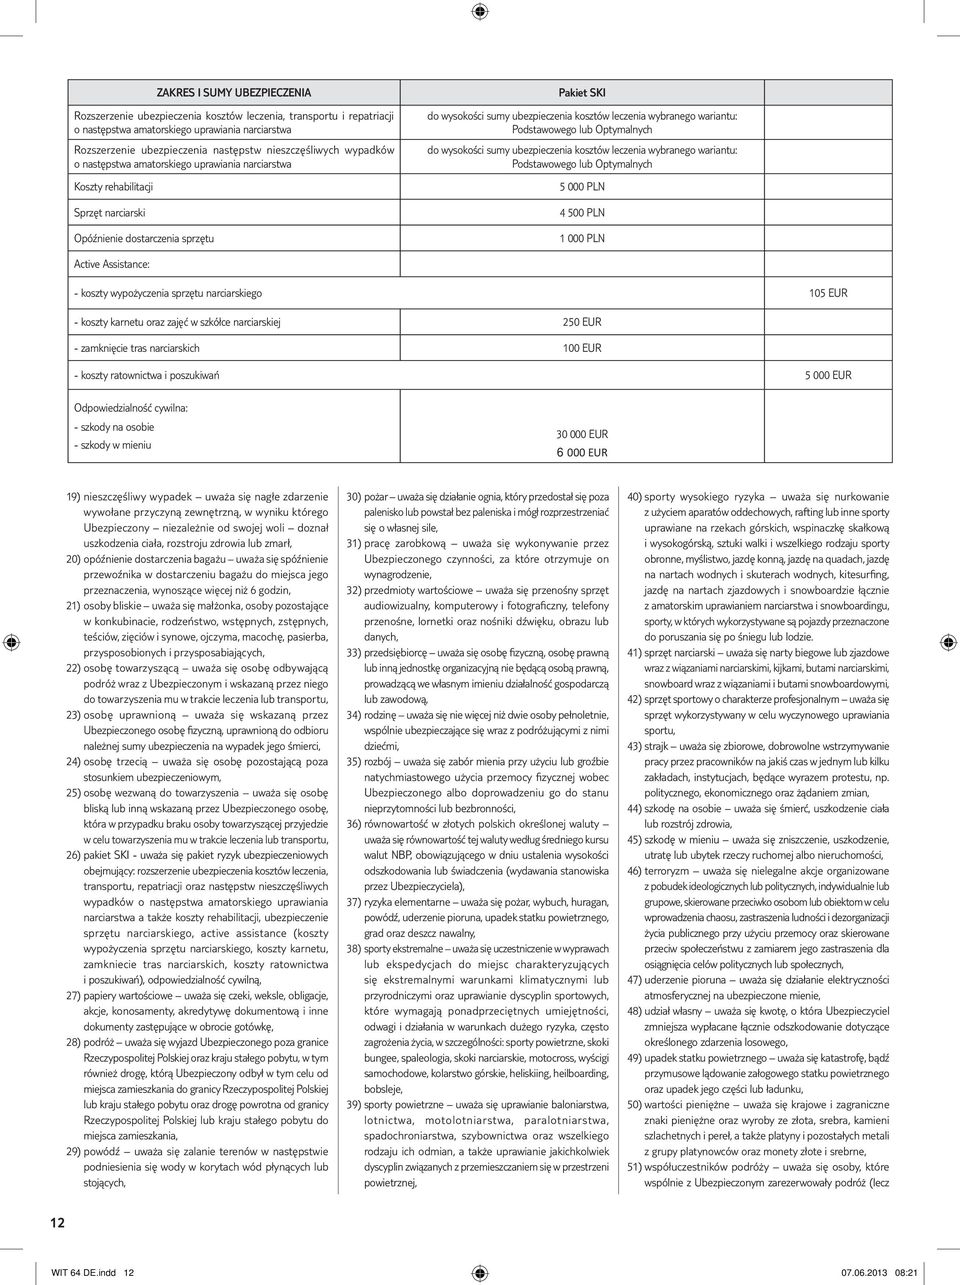 wariantu: Podstawowego lub Optymalnych do wysokości sumy ubezpieczenia kosztów leczenia wybranego wariantu: Podstawowego lub Optymalnych 5 000 PLN 4 500 PLN 1 000 PLN Active Assistance: - koszty